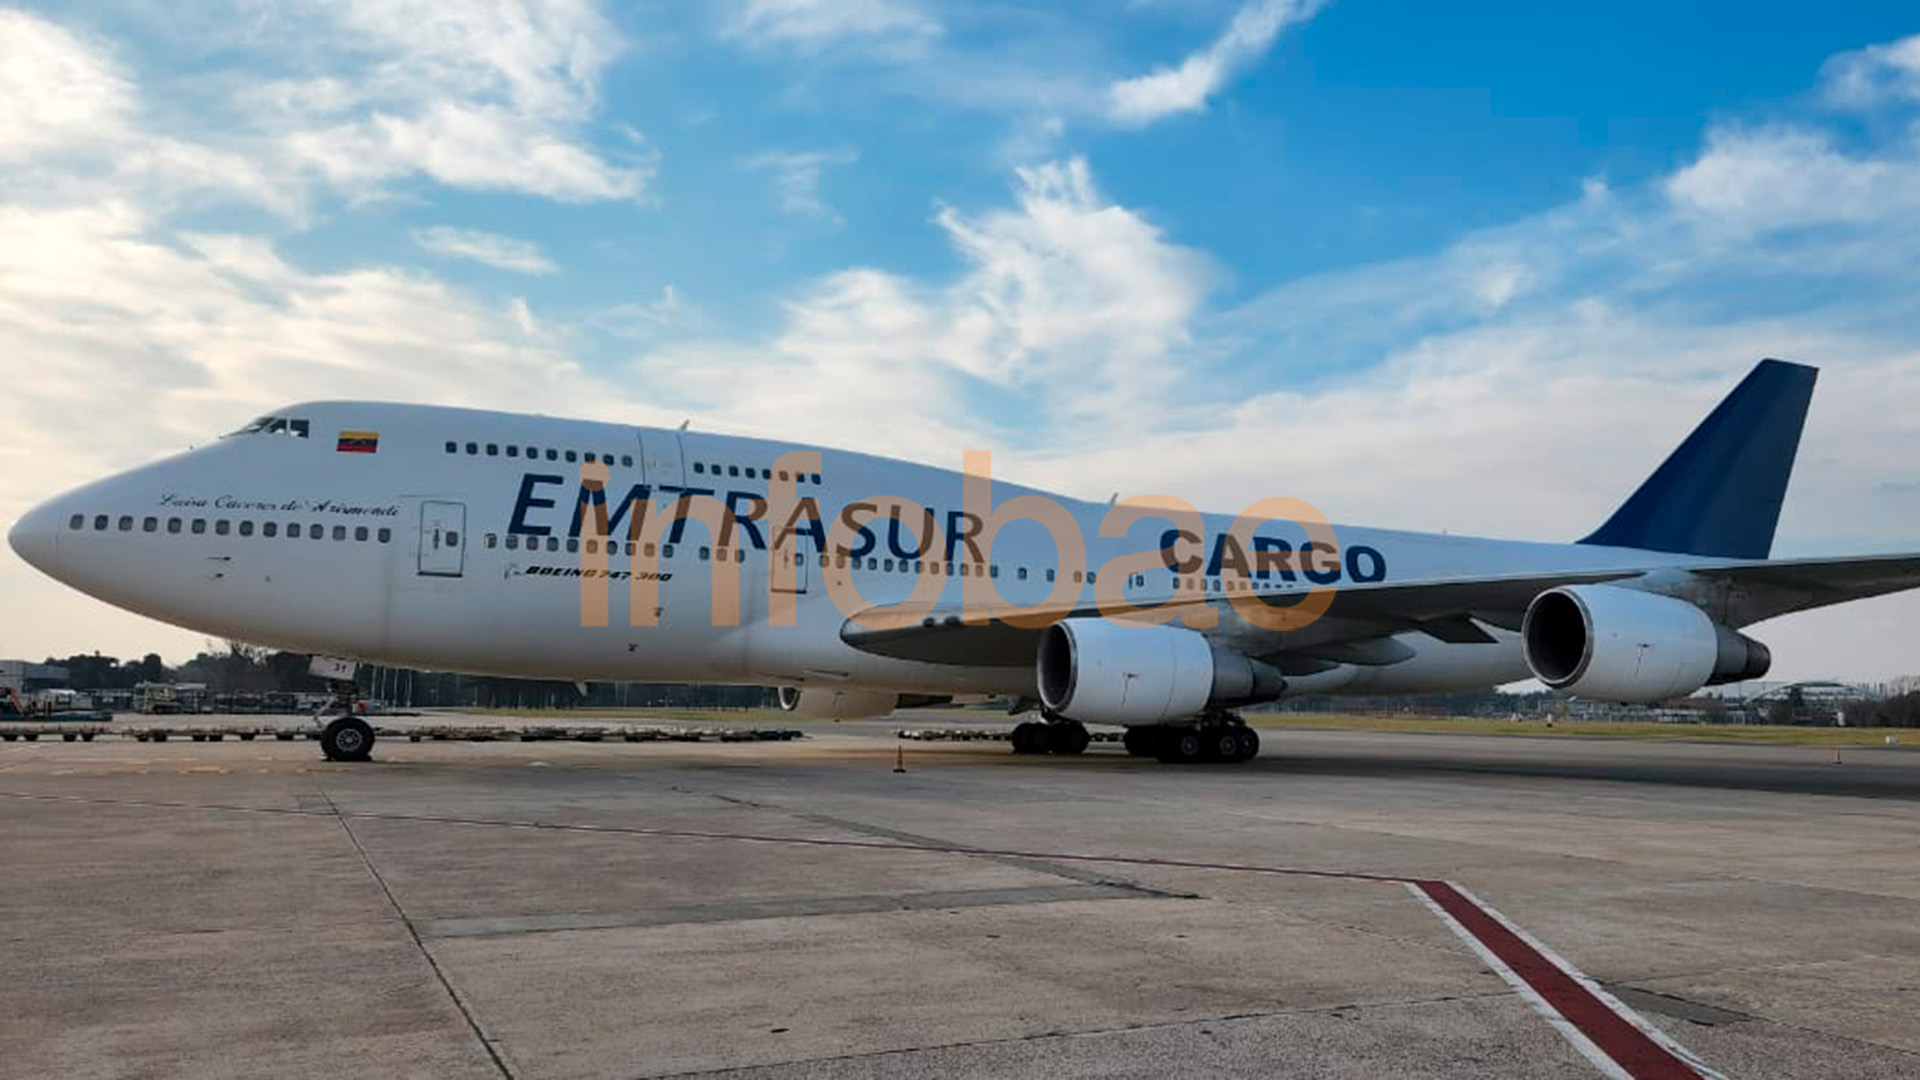 La justicia argentina incautó un Boeing 747 de la compañía venezolana Emtrasur, que está retenido desde junio en Ezeiza y cuya tripulación está impedida de salir del país